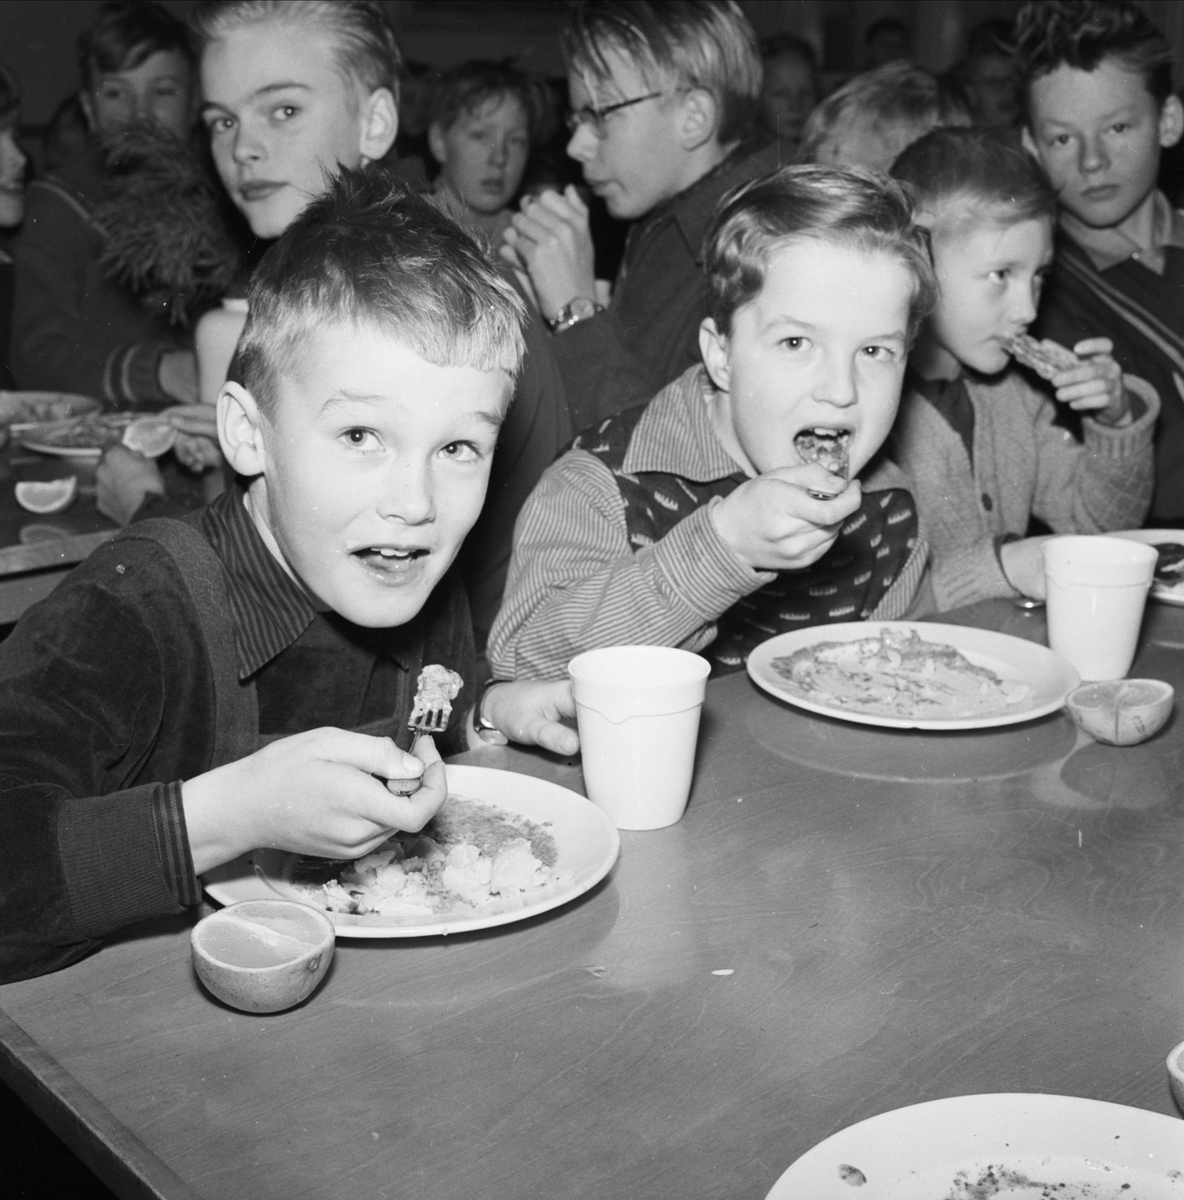 "Barnbespisningen" - Nannaskolan, Uppsala 1956